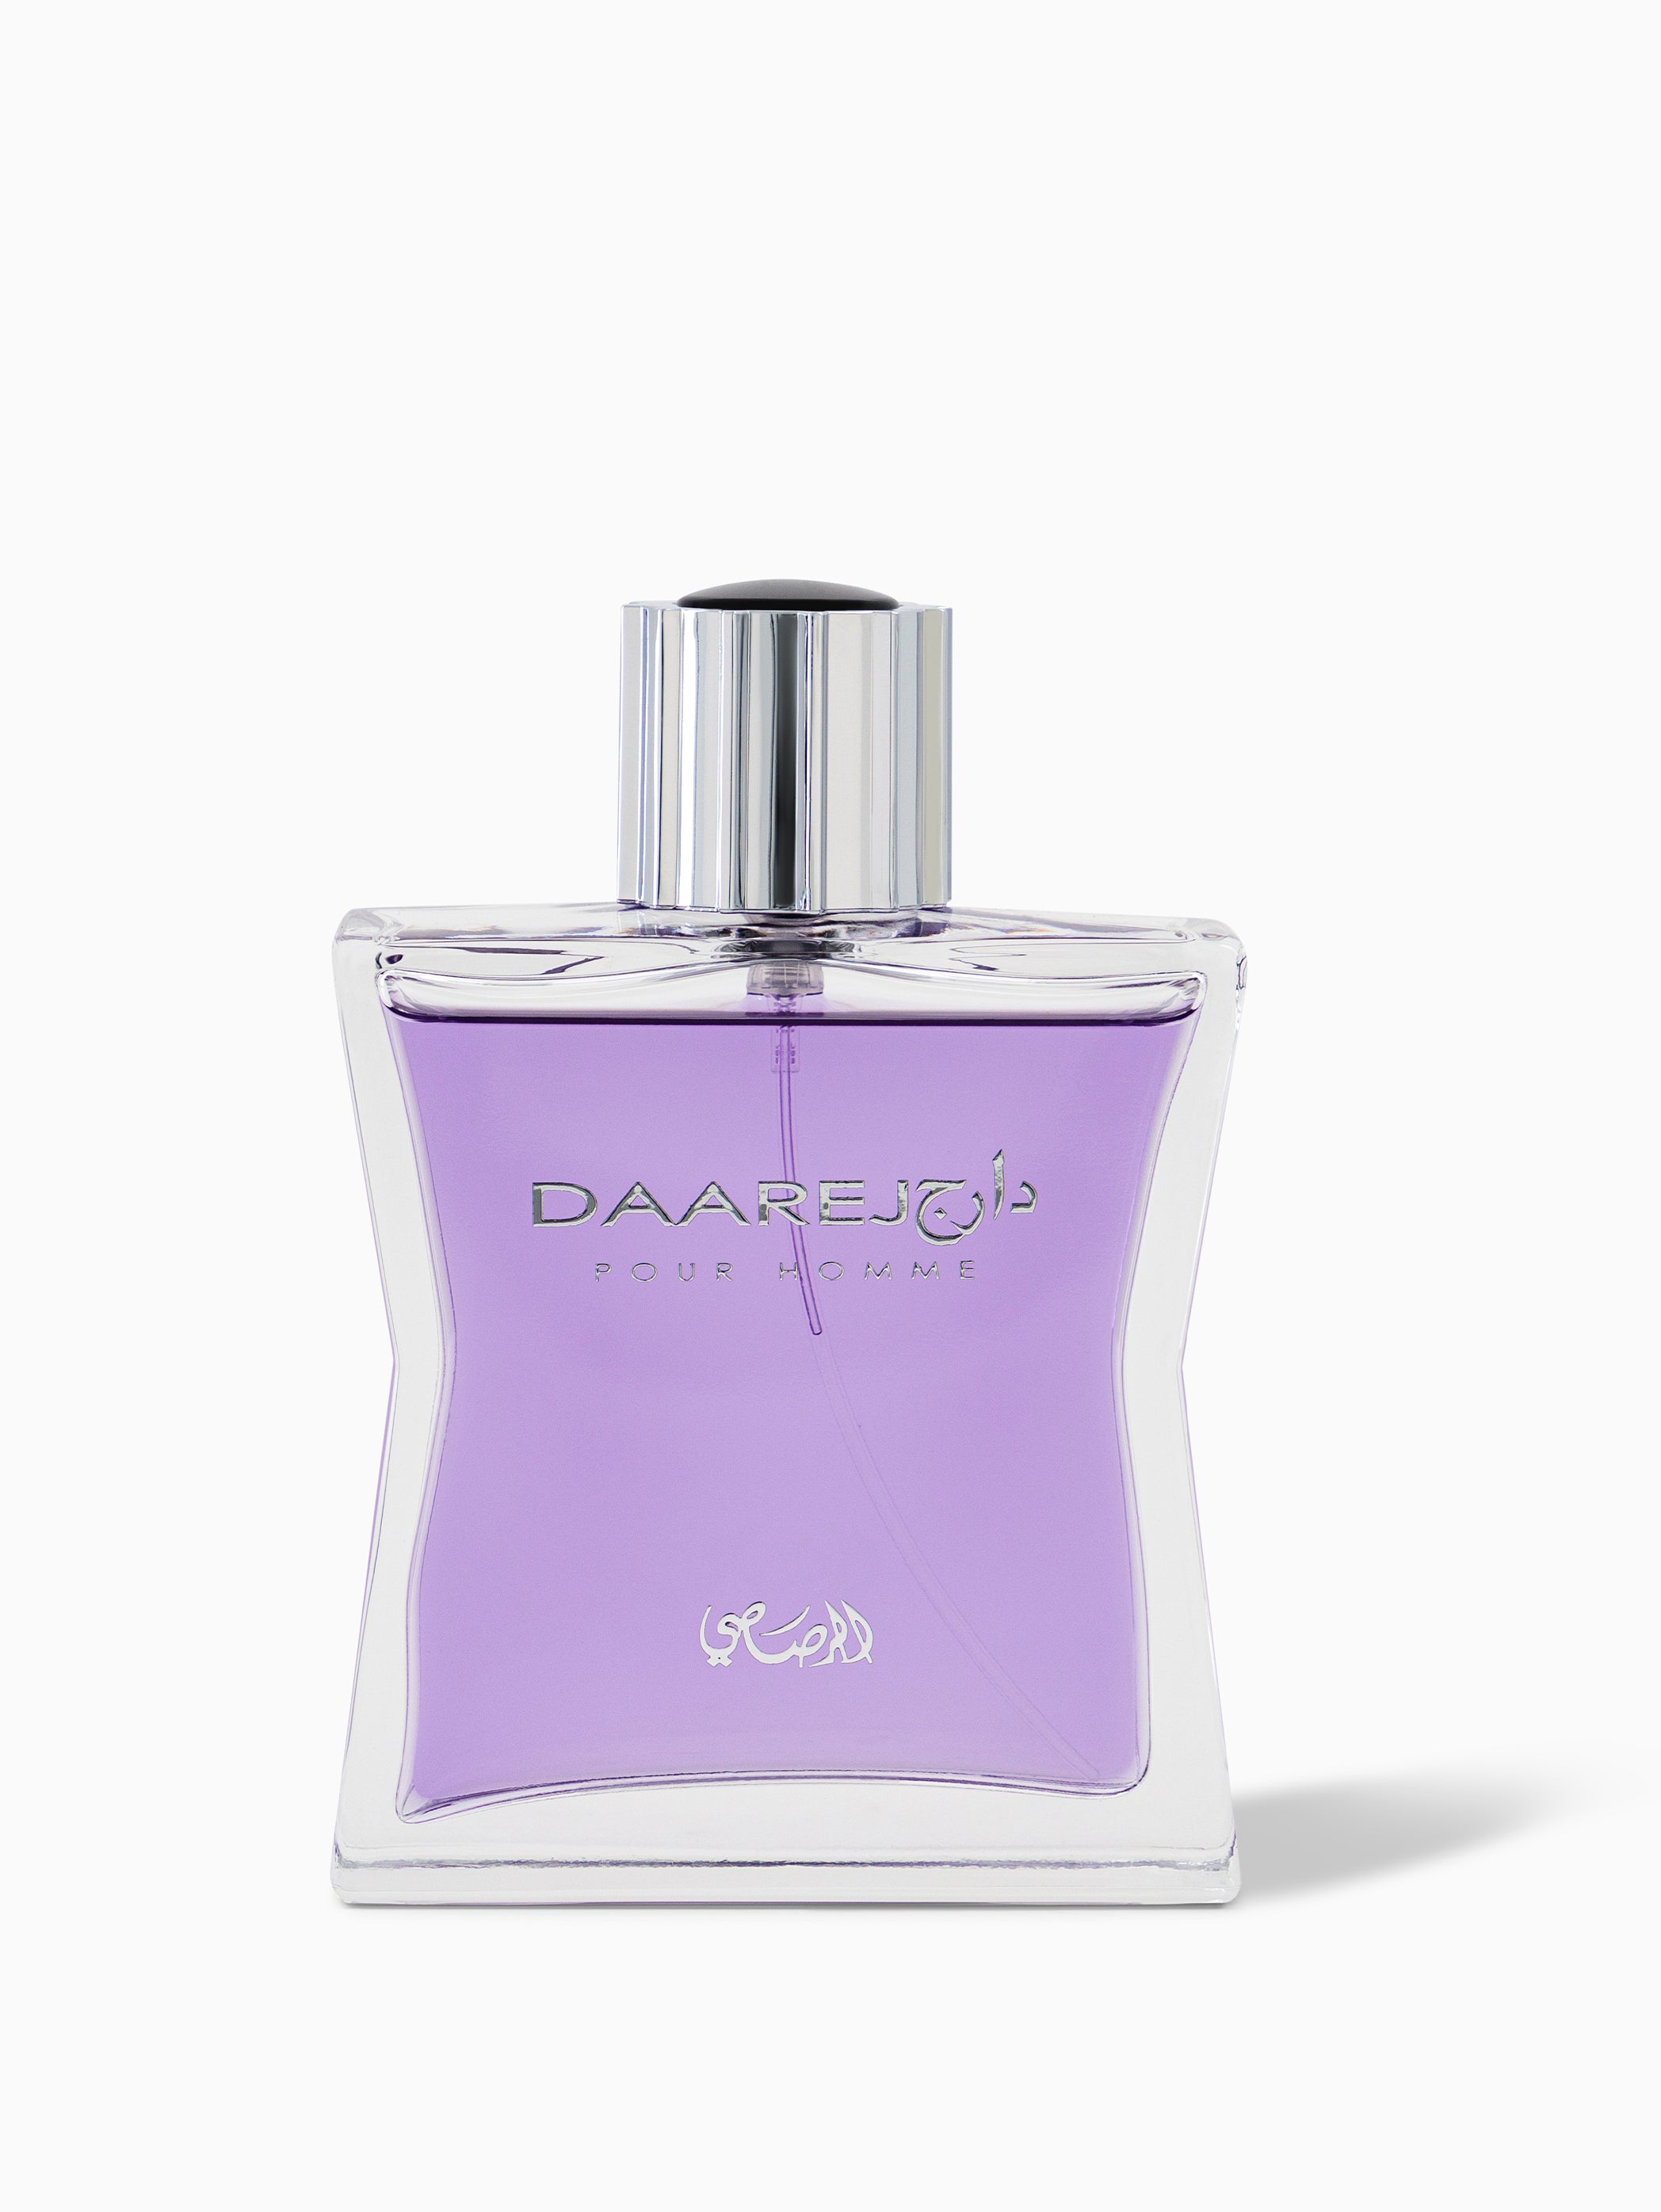 Sotoor - Taa' – Rasasi Perfumes